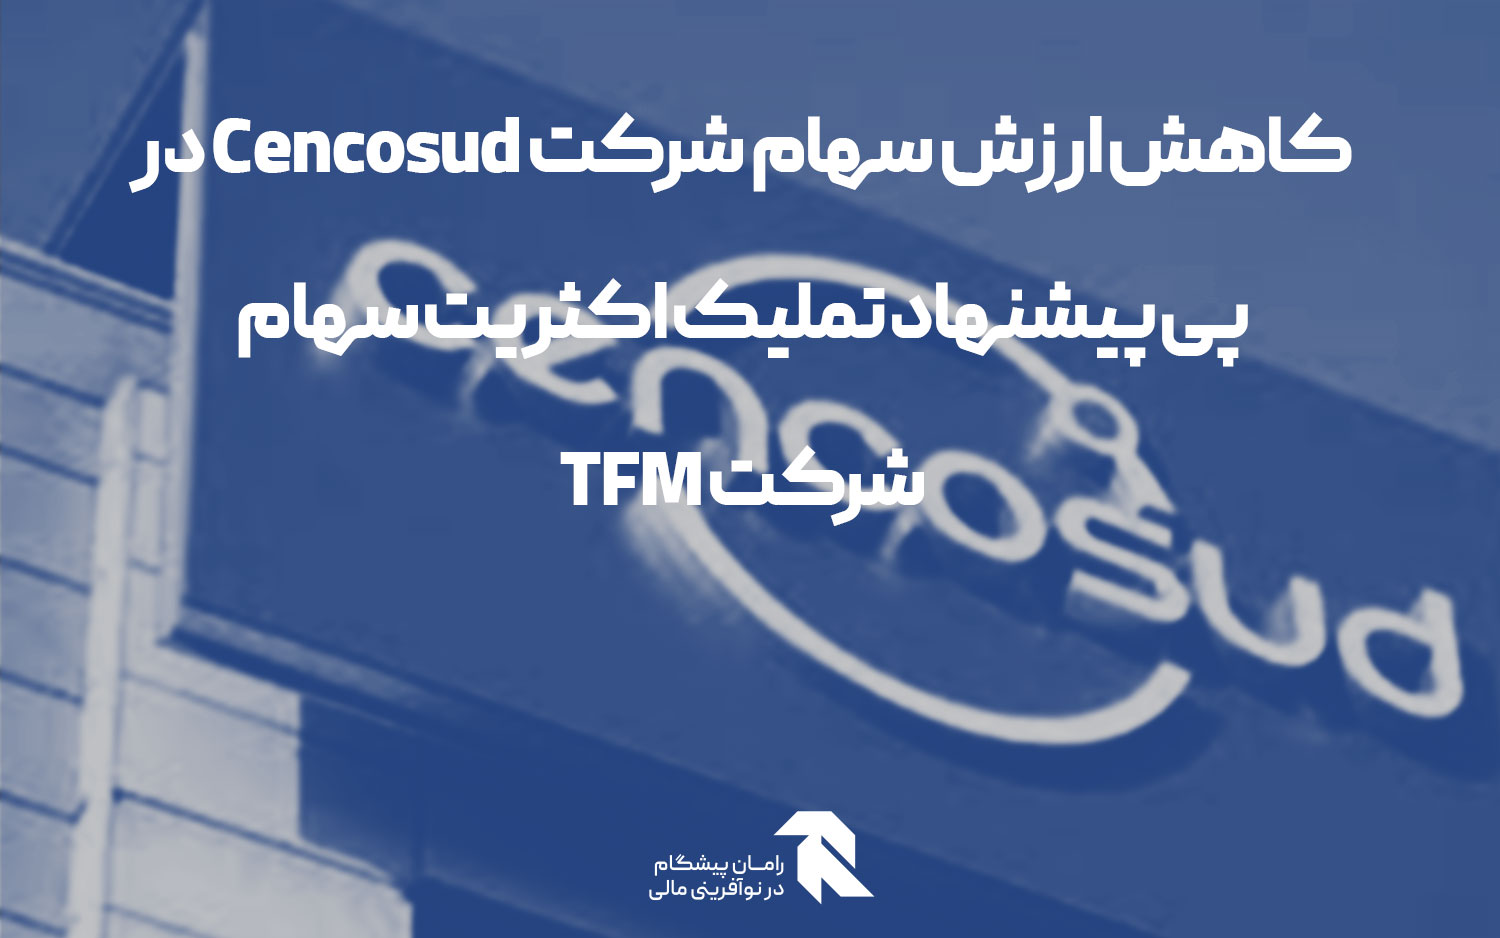 کاهش ارزش سهام شرکت Cencosud در پی پیشنهاد تملیک اکثریت سهام شرکت TFM